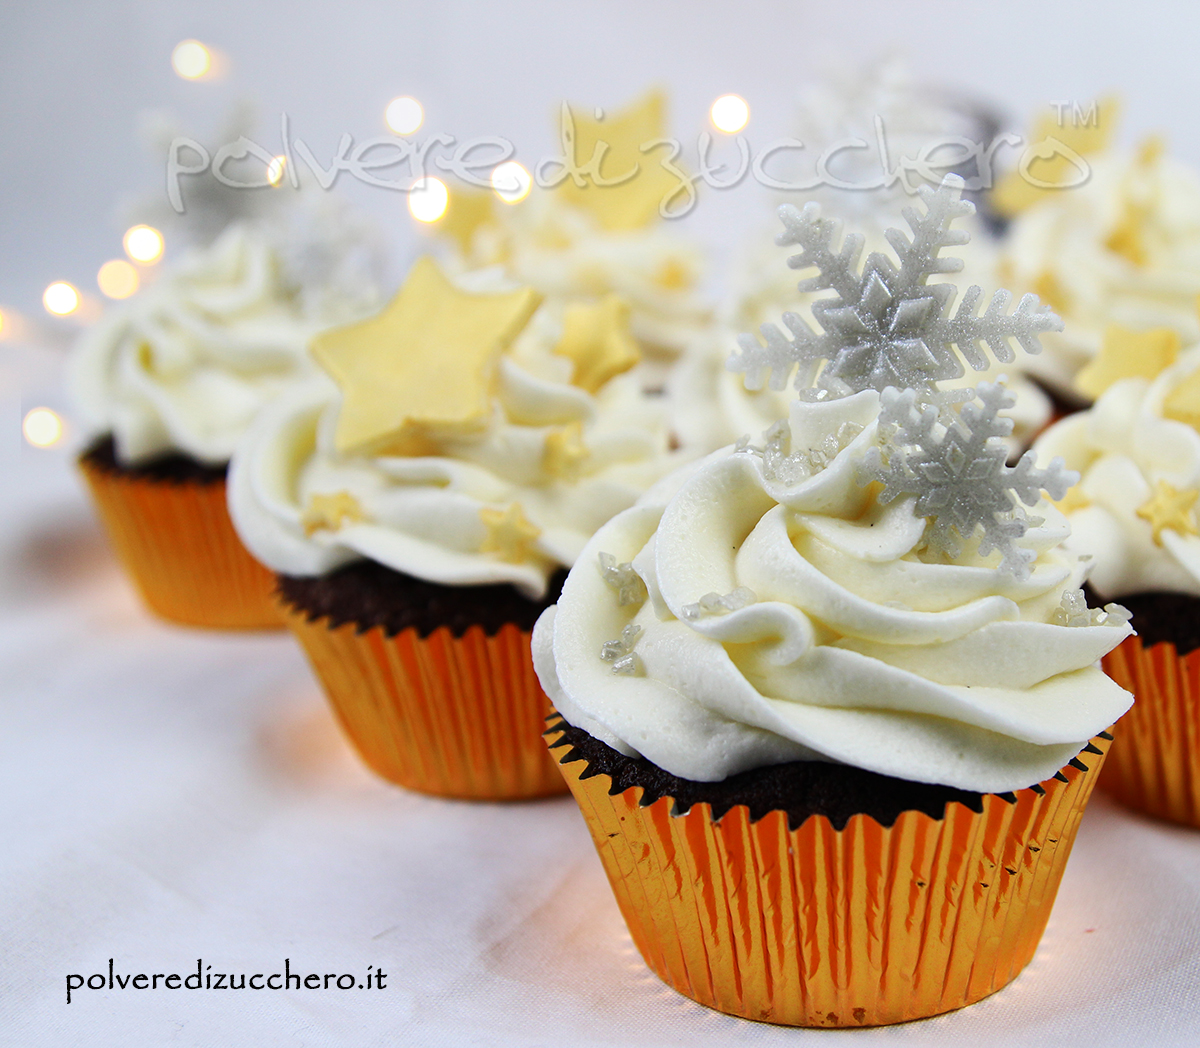 cake design cupcake compleanno cioccolato vaniglia inverno stelle fiocchi di neve polvere di zucchero